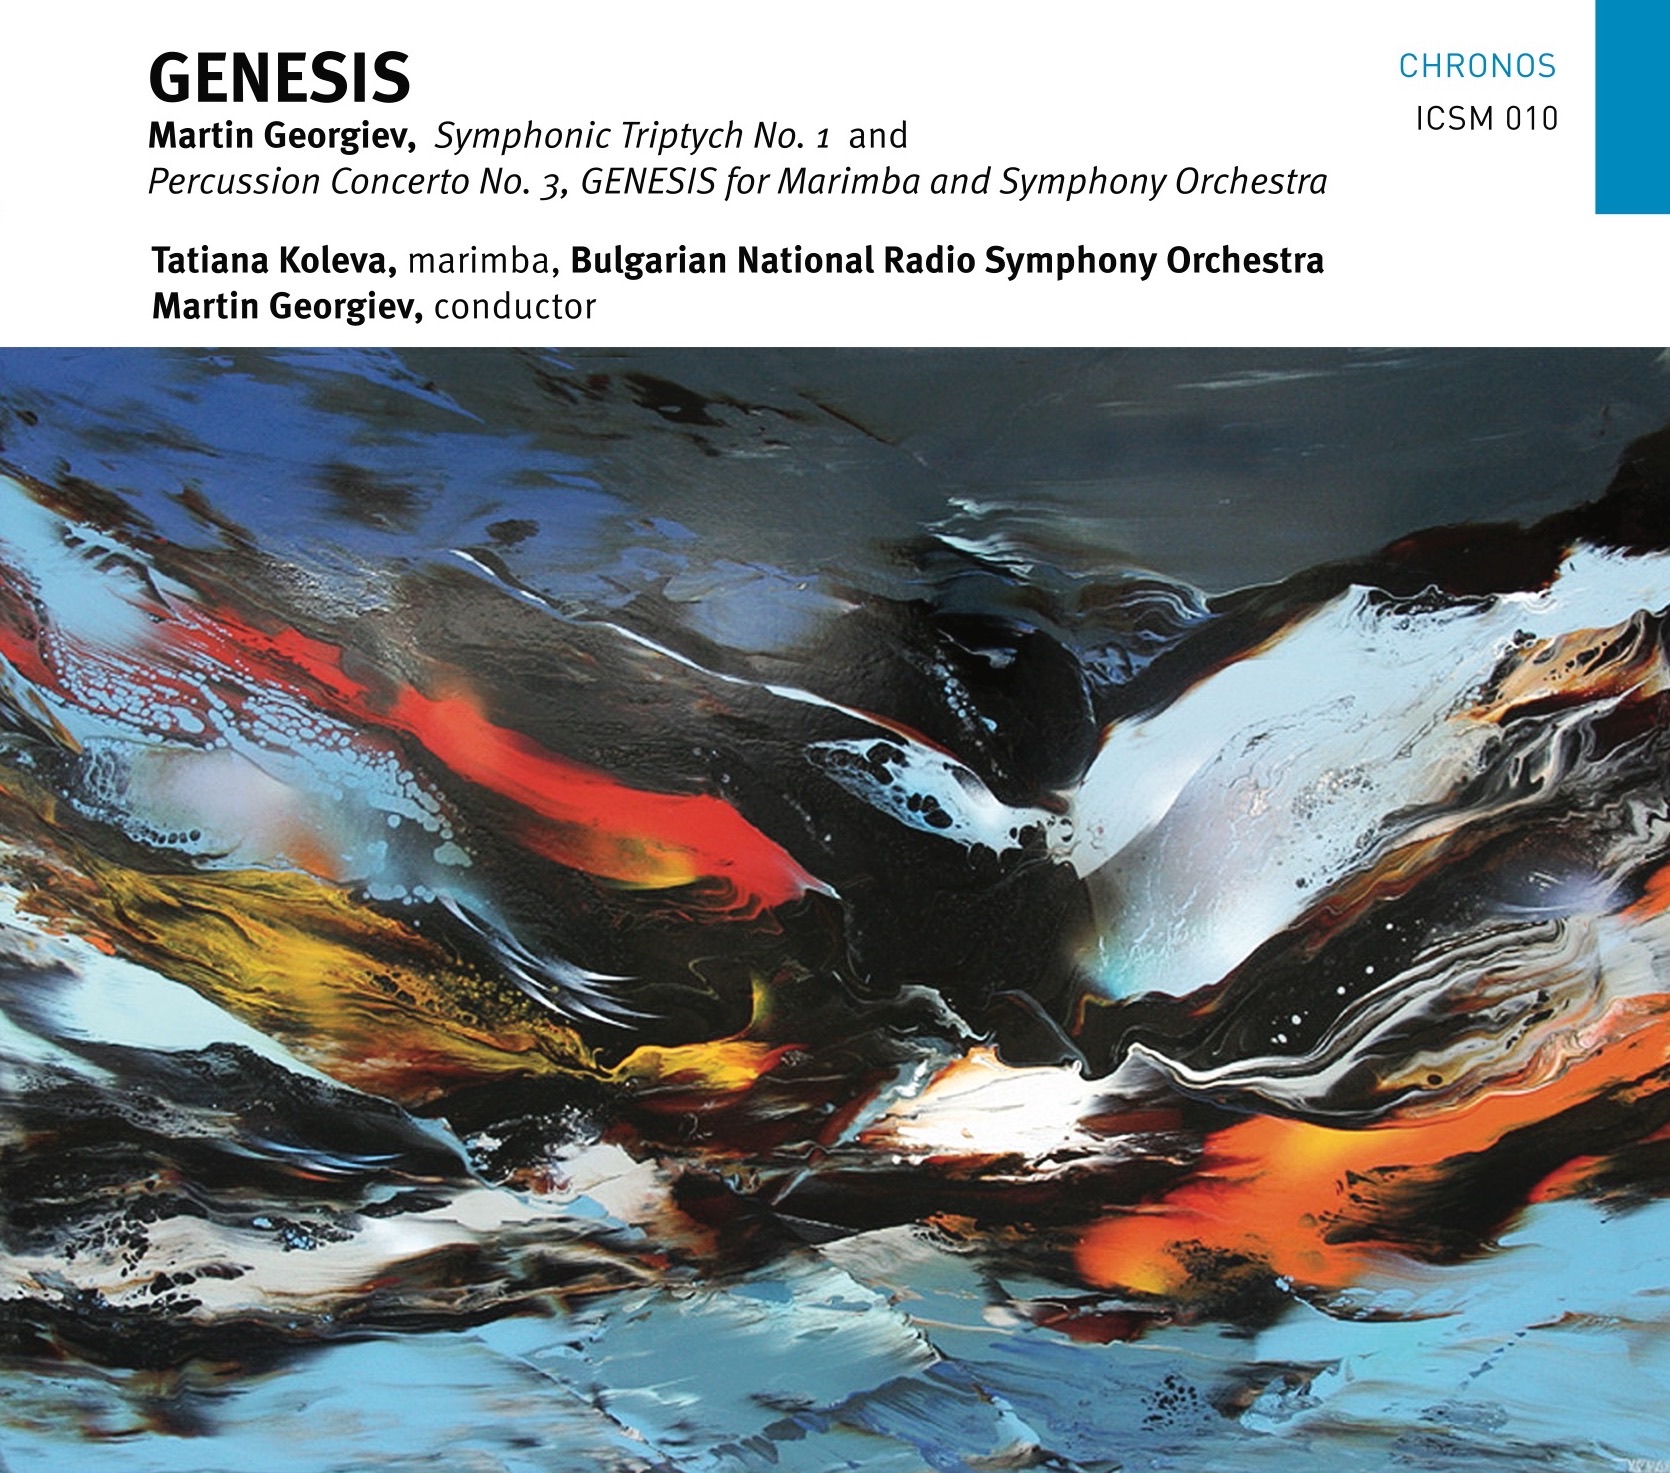 Genesis, Martin Georgiev